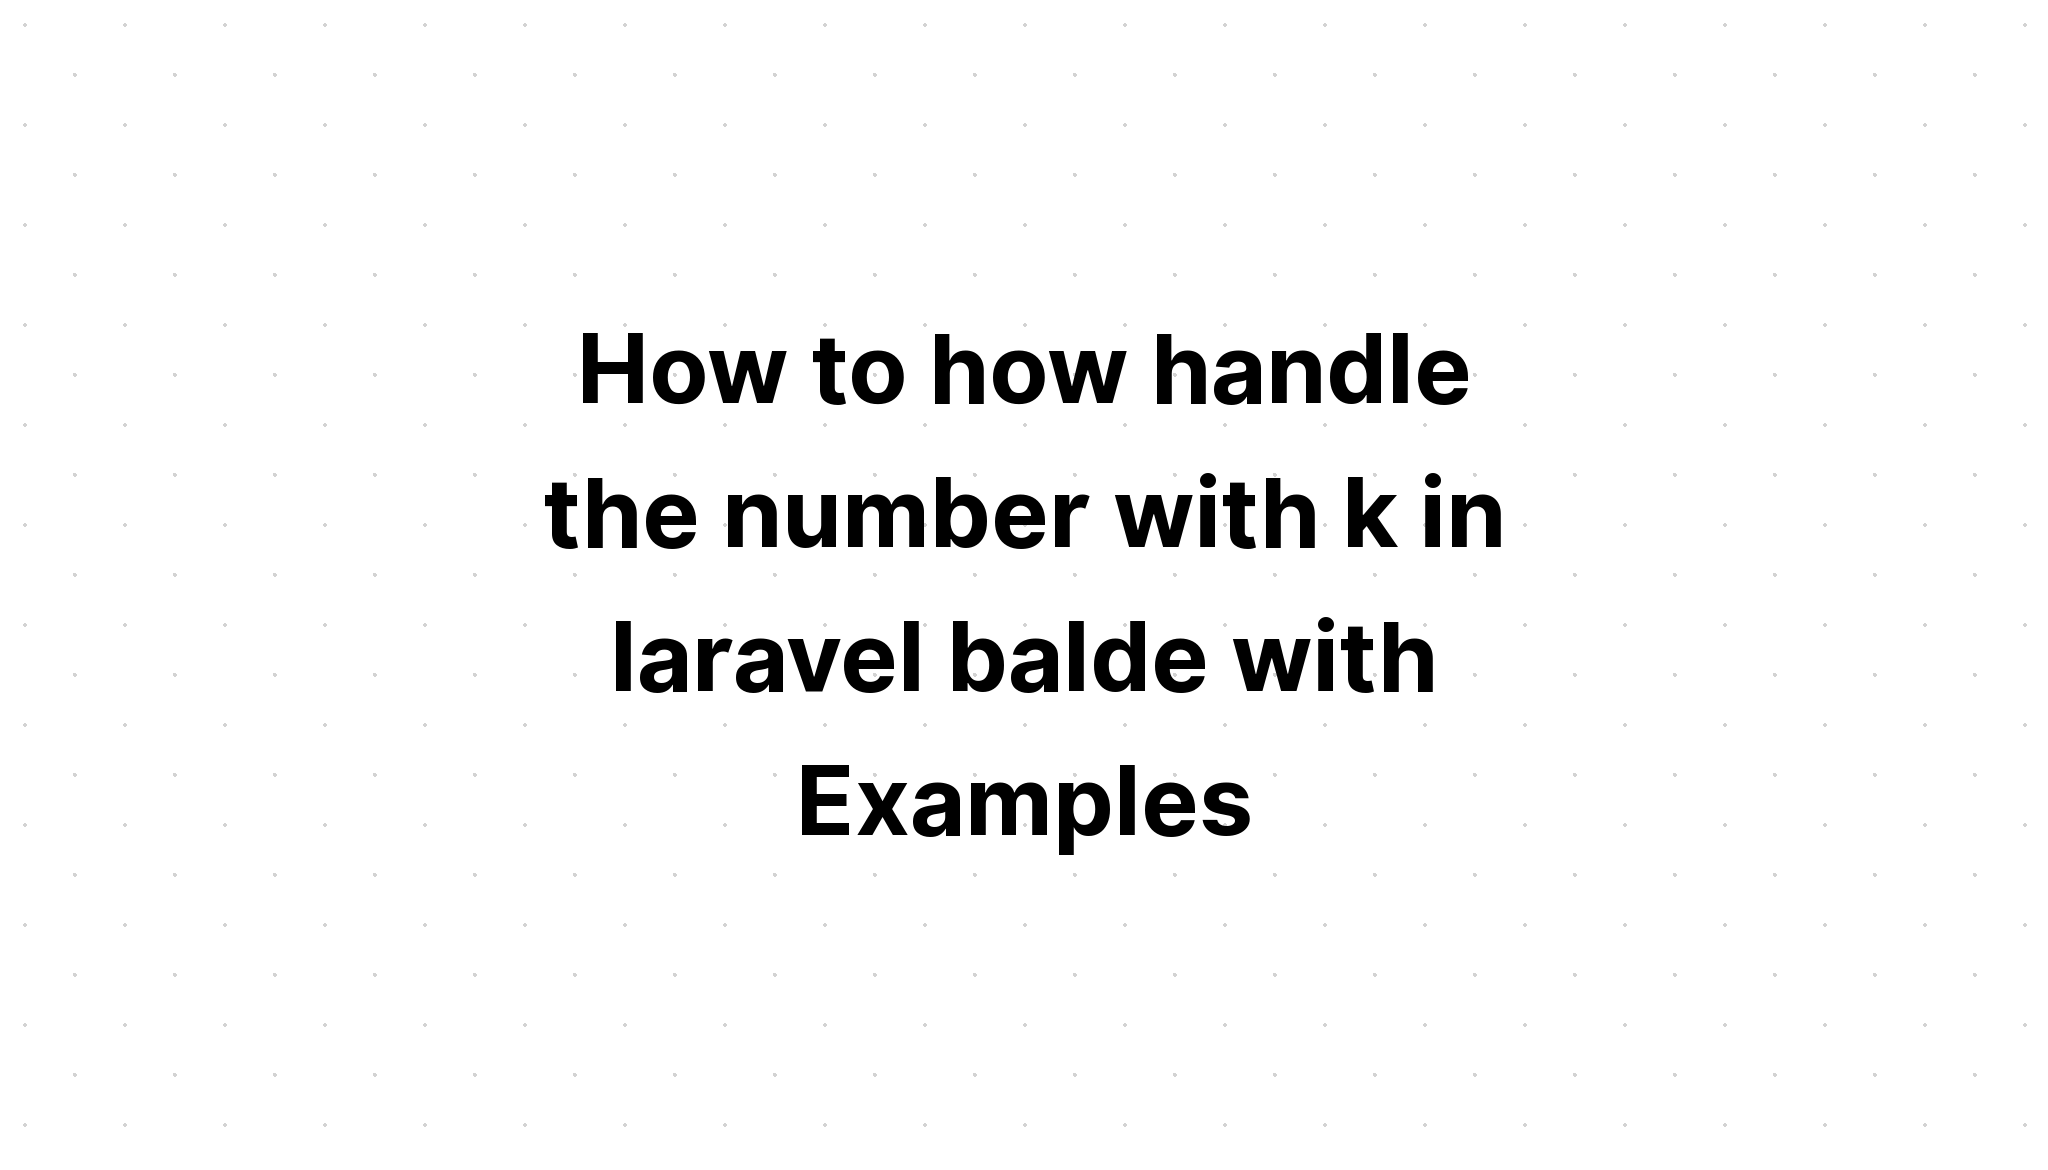 Cách xử lý số bằng k trong laravel blade với Ví dụ